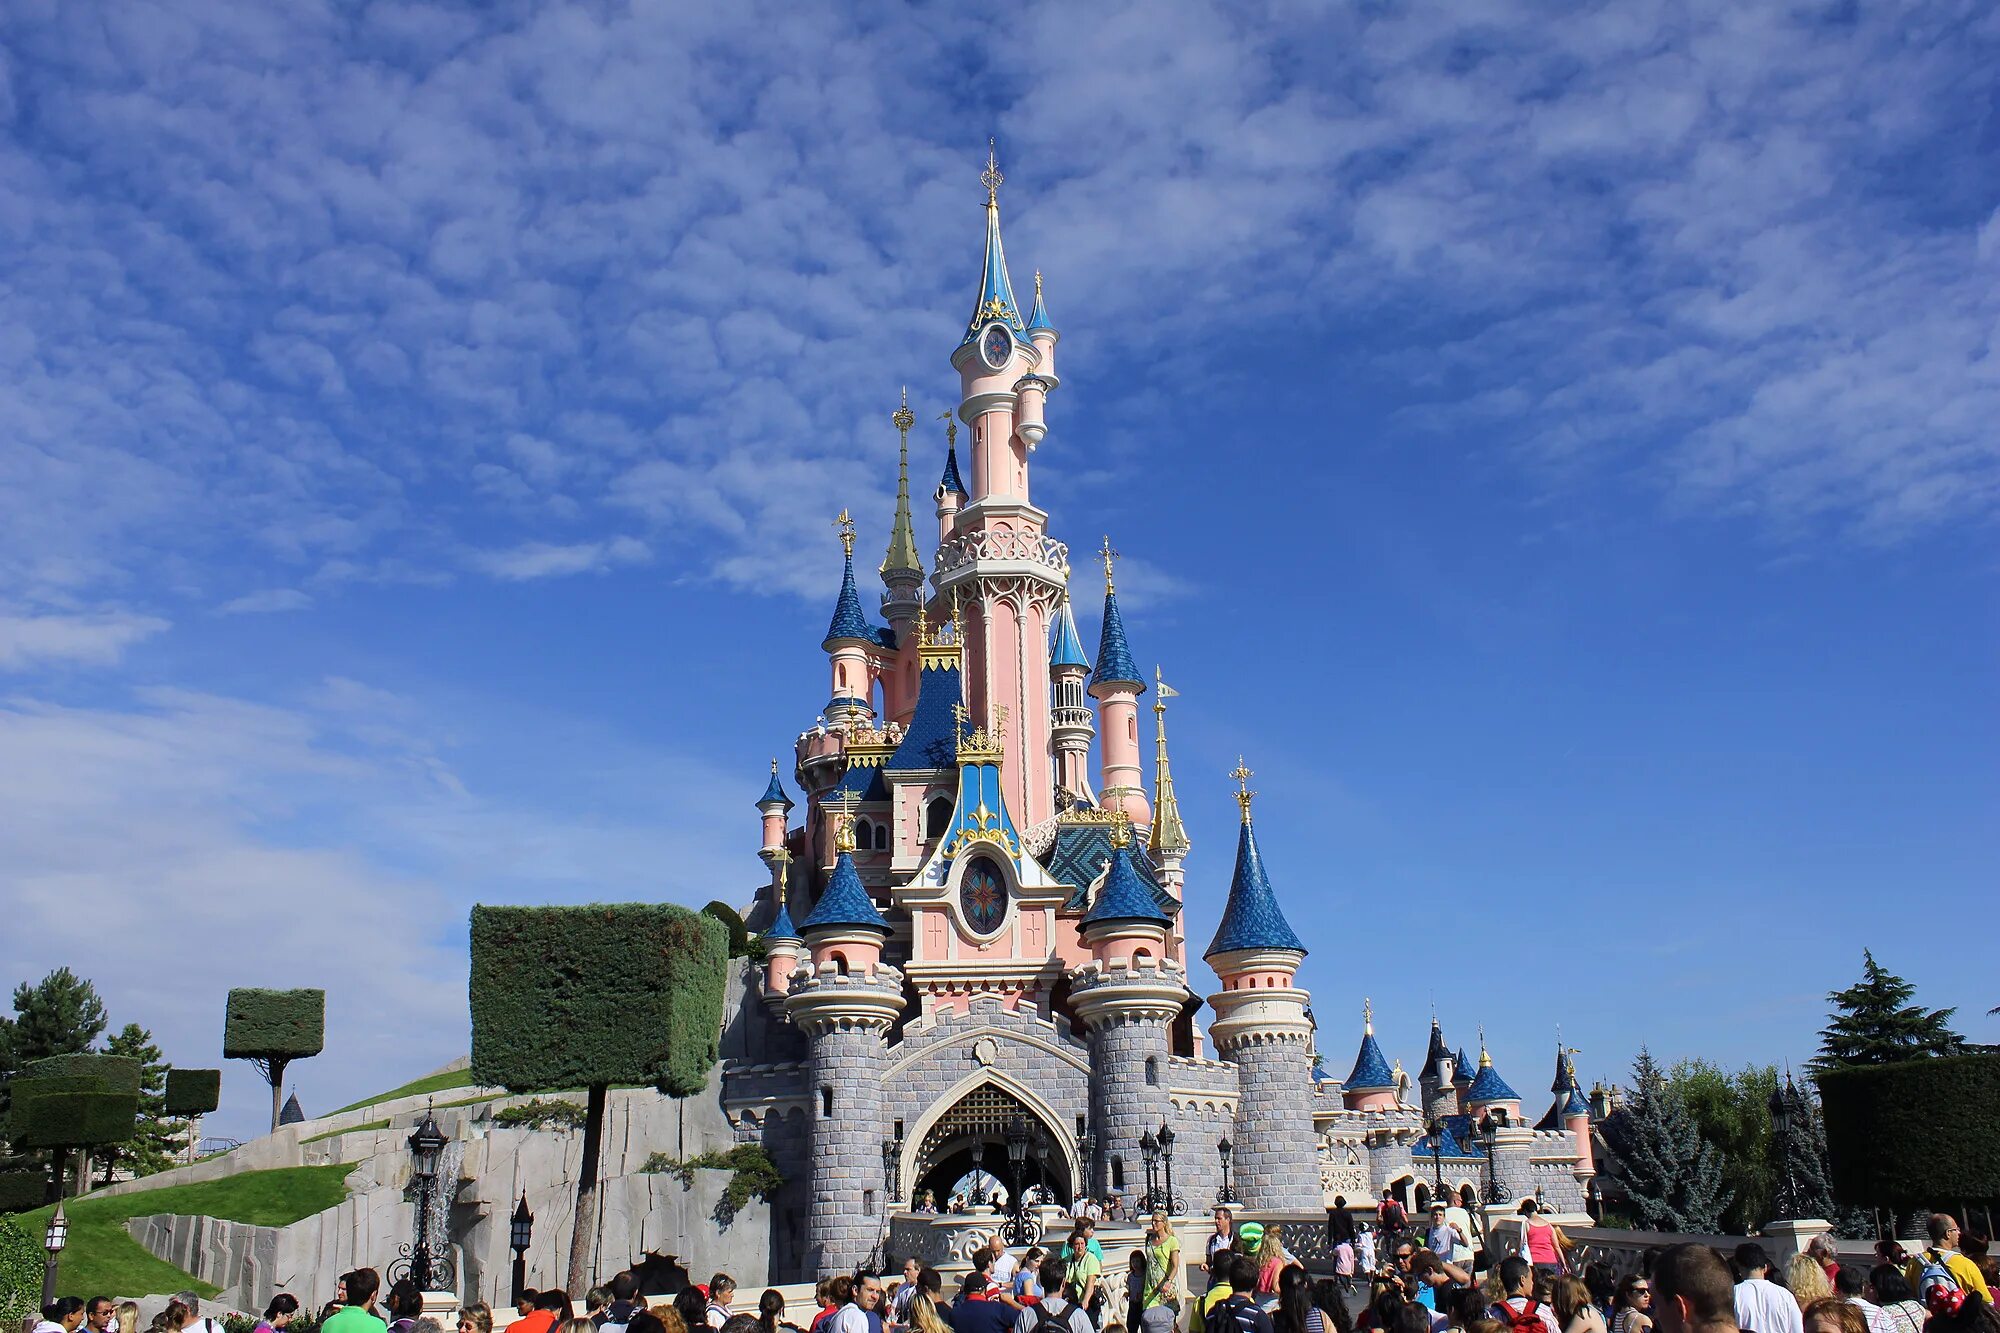 Диснейленд находится в городе. Диснейленд Париж Disneyland Paris. Парижский Диснейленд замок спящей красавицы. Парк Уолт Дисней в Париже. Диснейленд Париж Диснейленд парк.